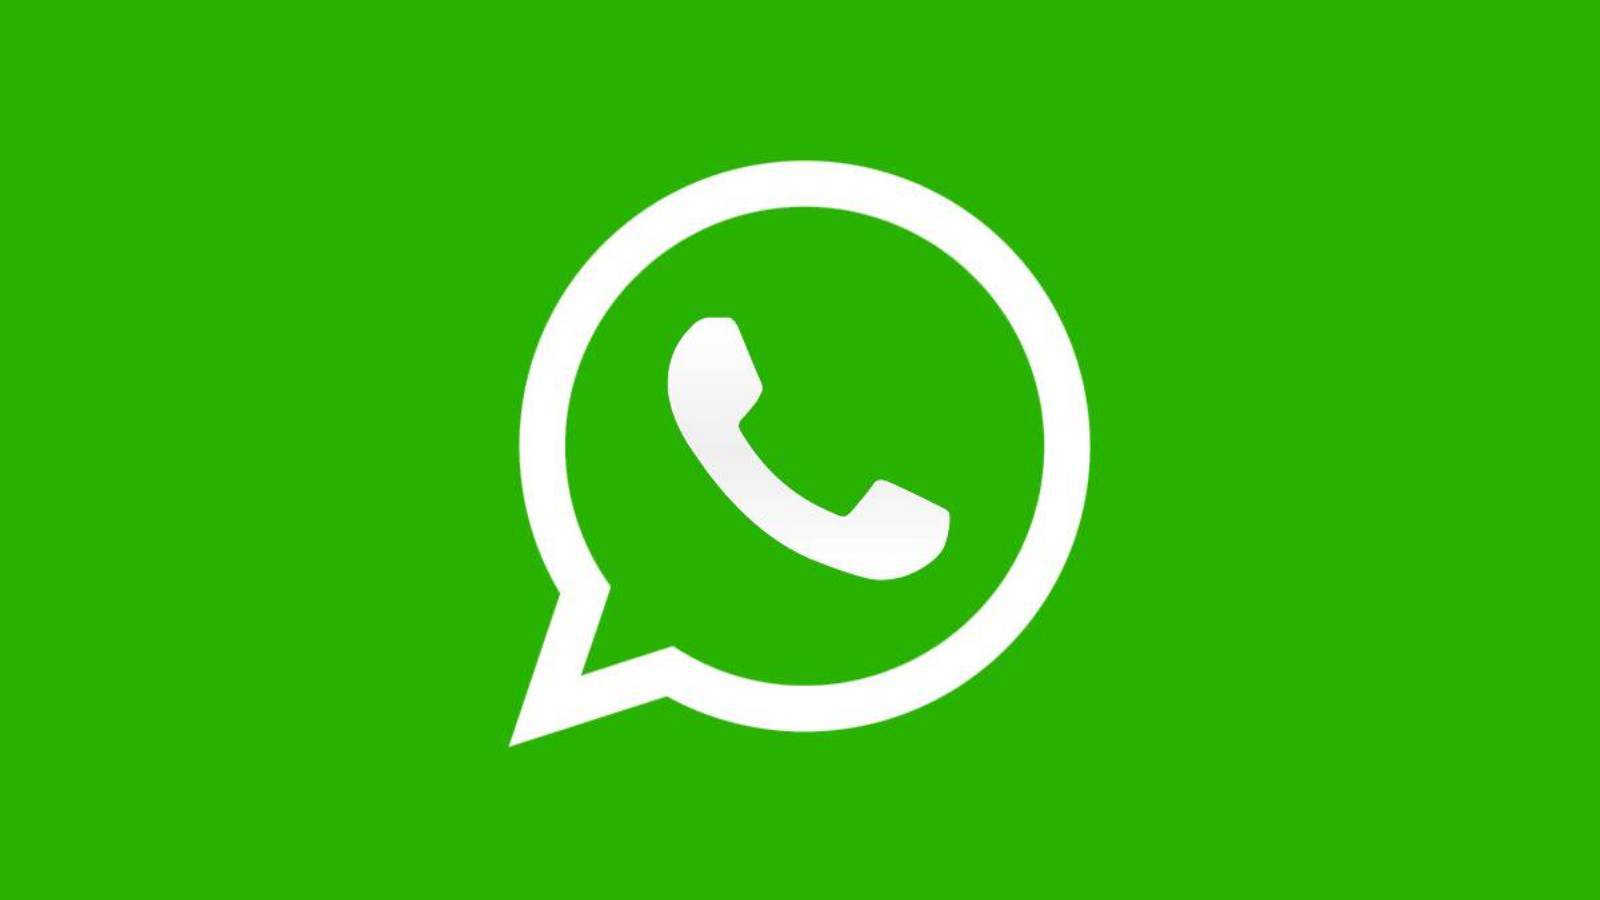 WhatsApp loss